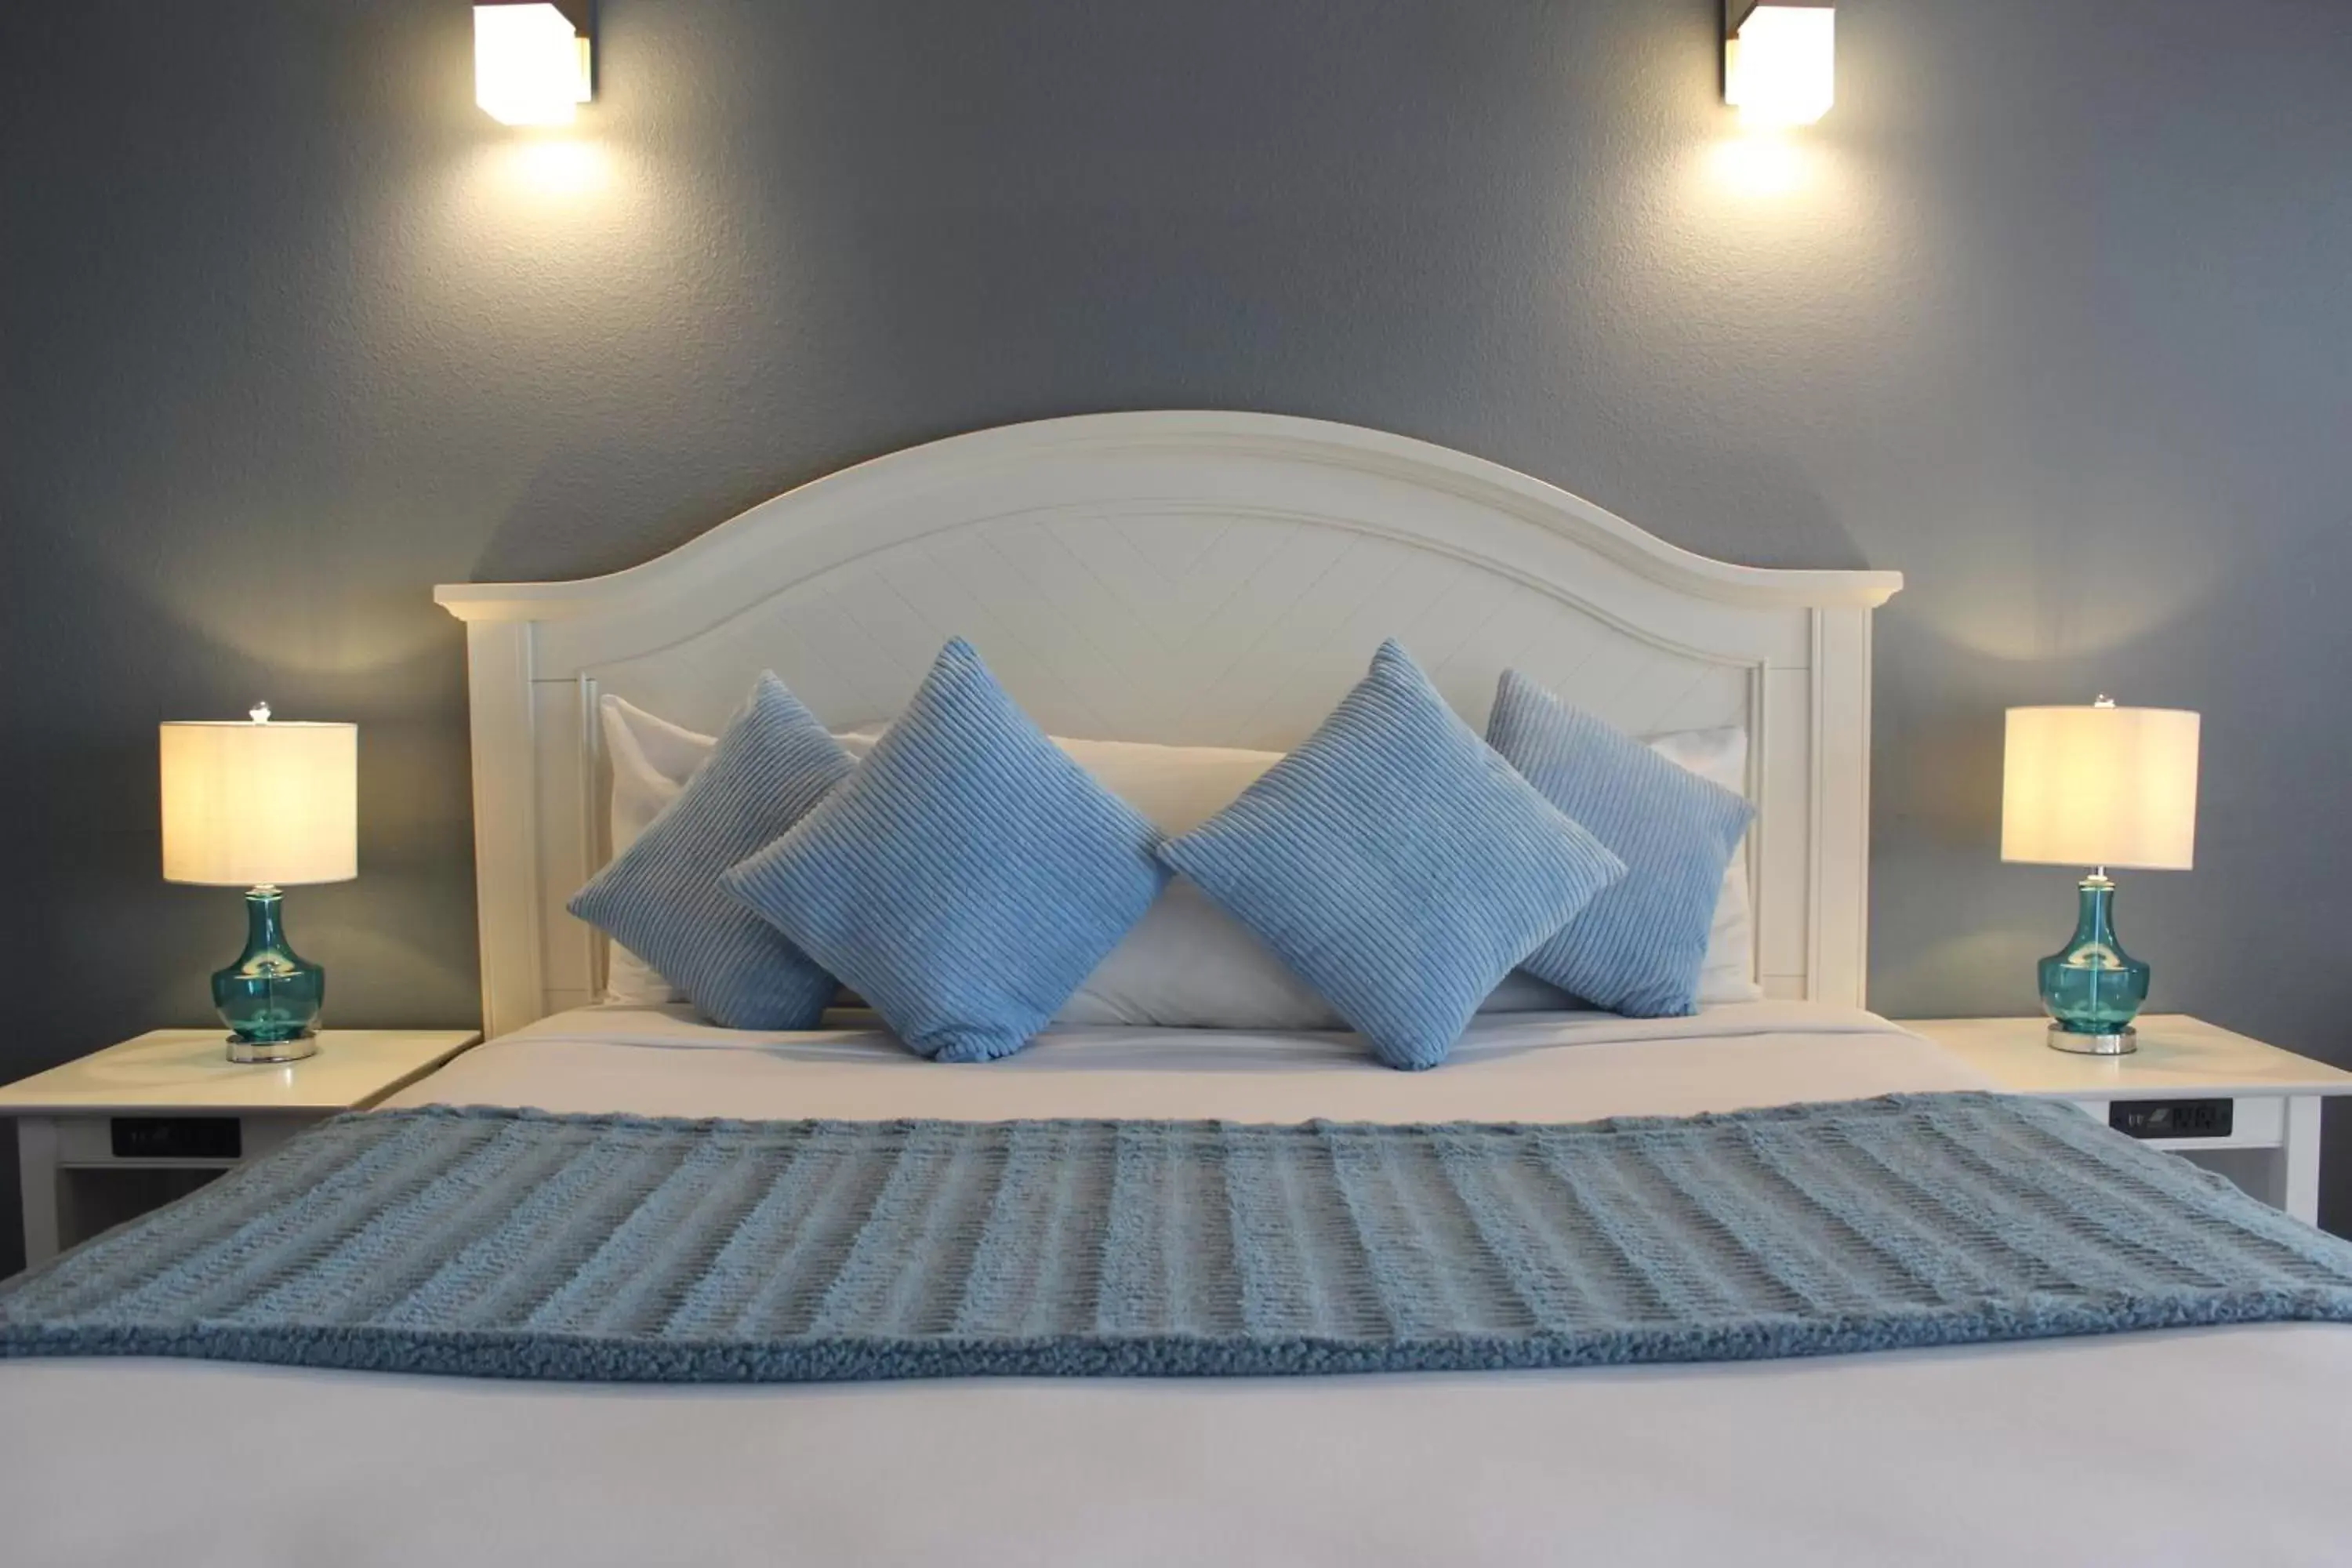 Bed in The Oceanfront Inn